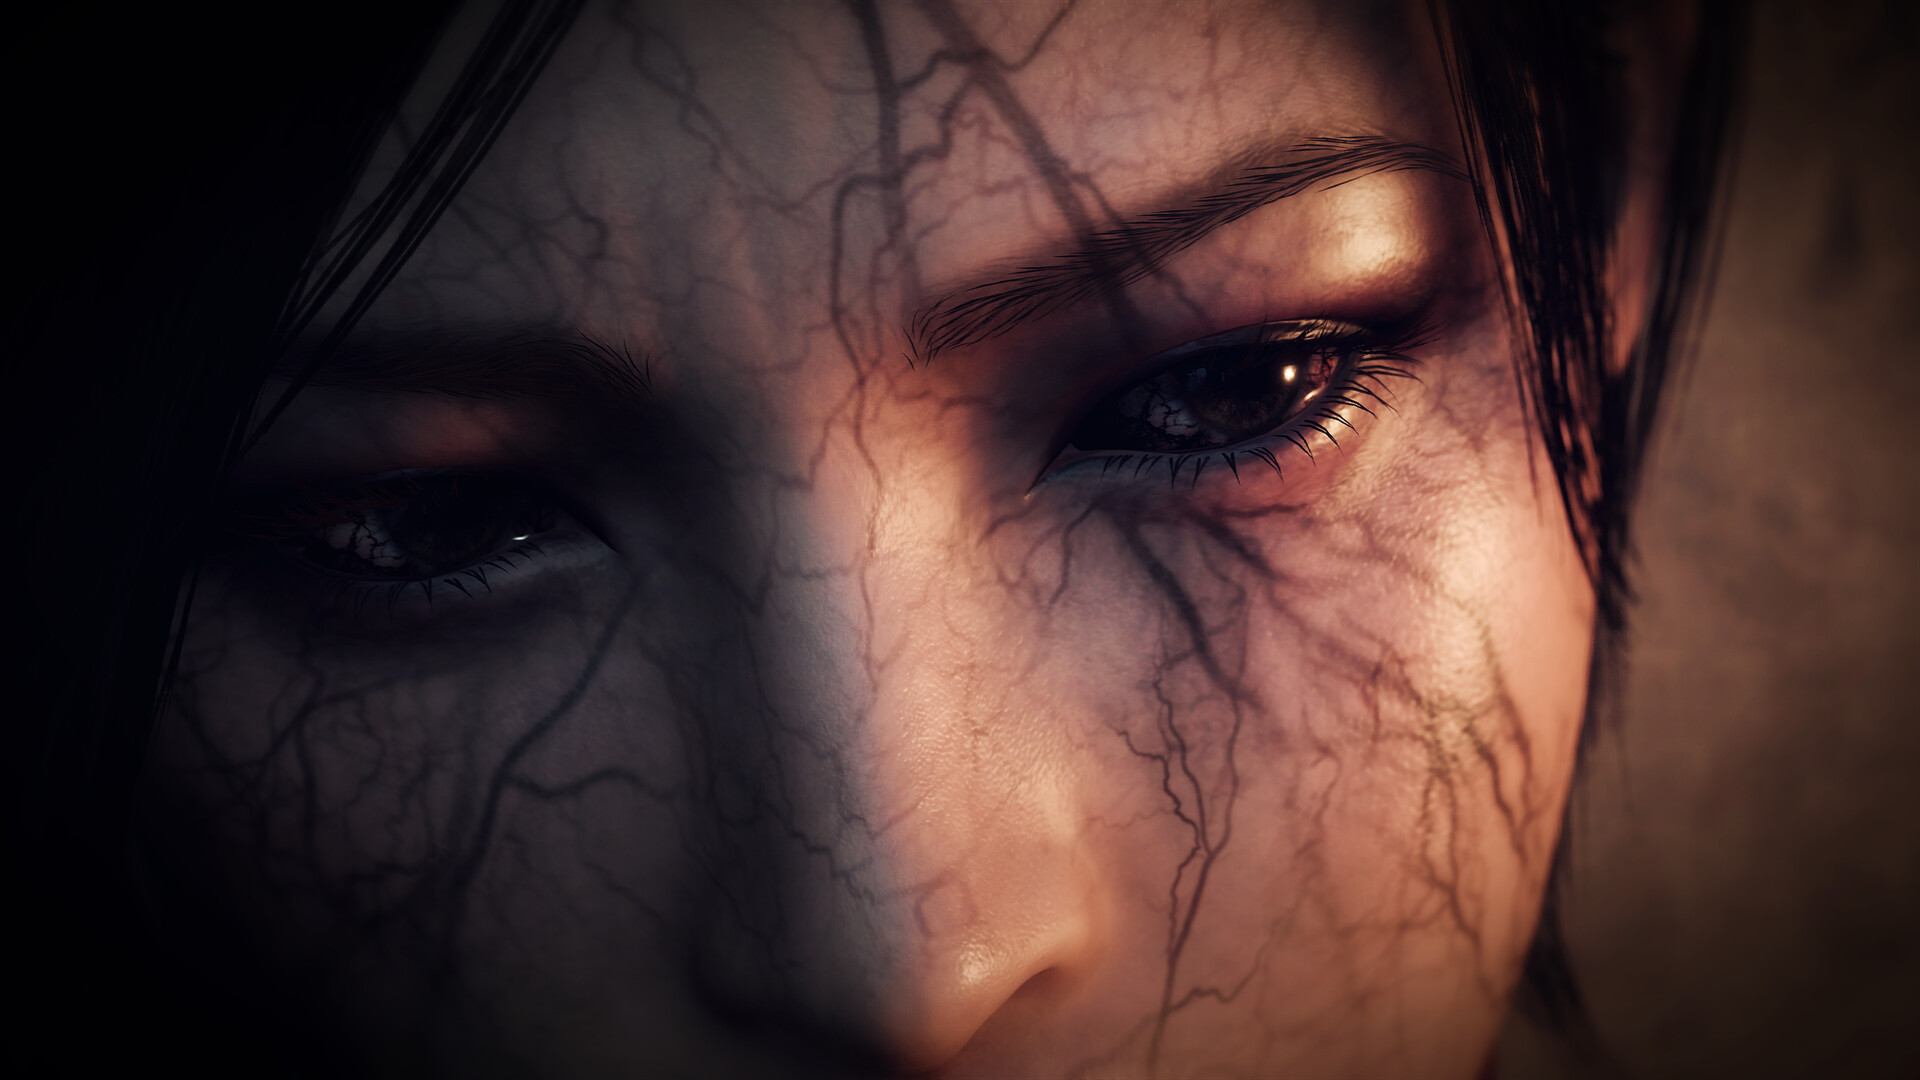 Ada Wong DLC “Resident Evil 4 Remake: Separate Ways” Releasing